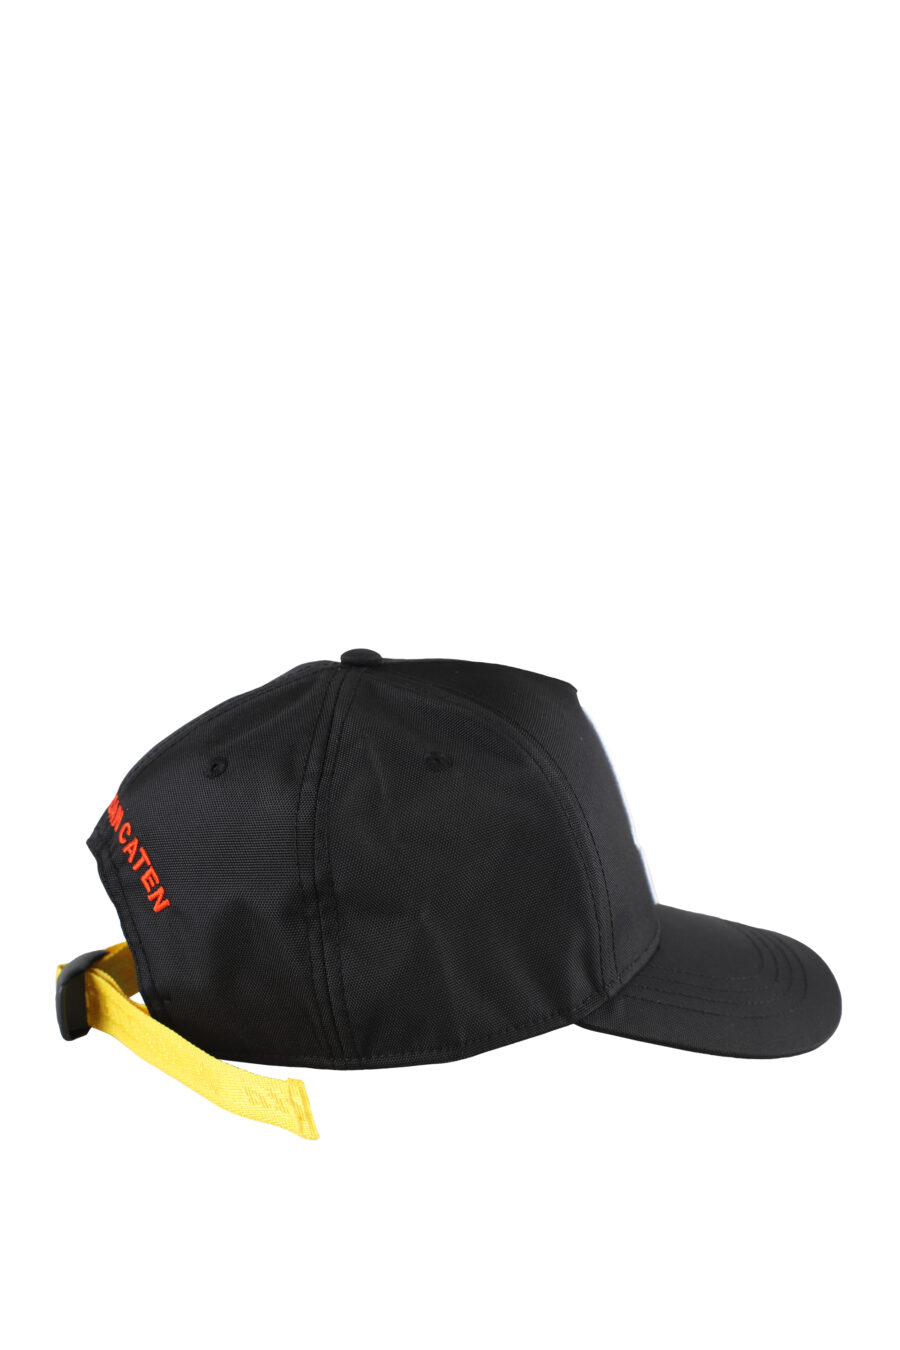 Verstellbare schwarze Kappe mit gelbem Band und "invicta"-Aufnäher - IMG 5184